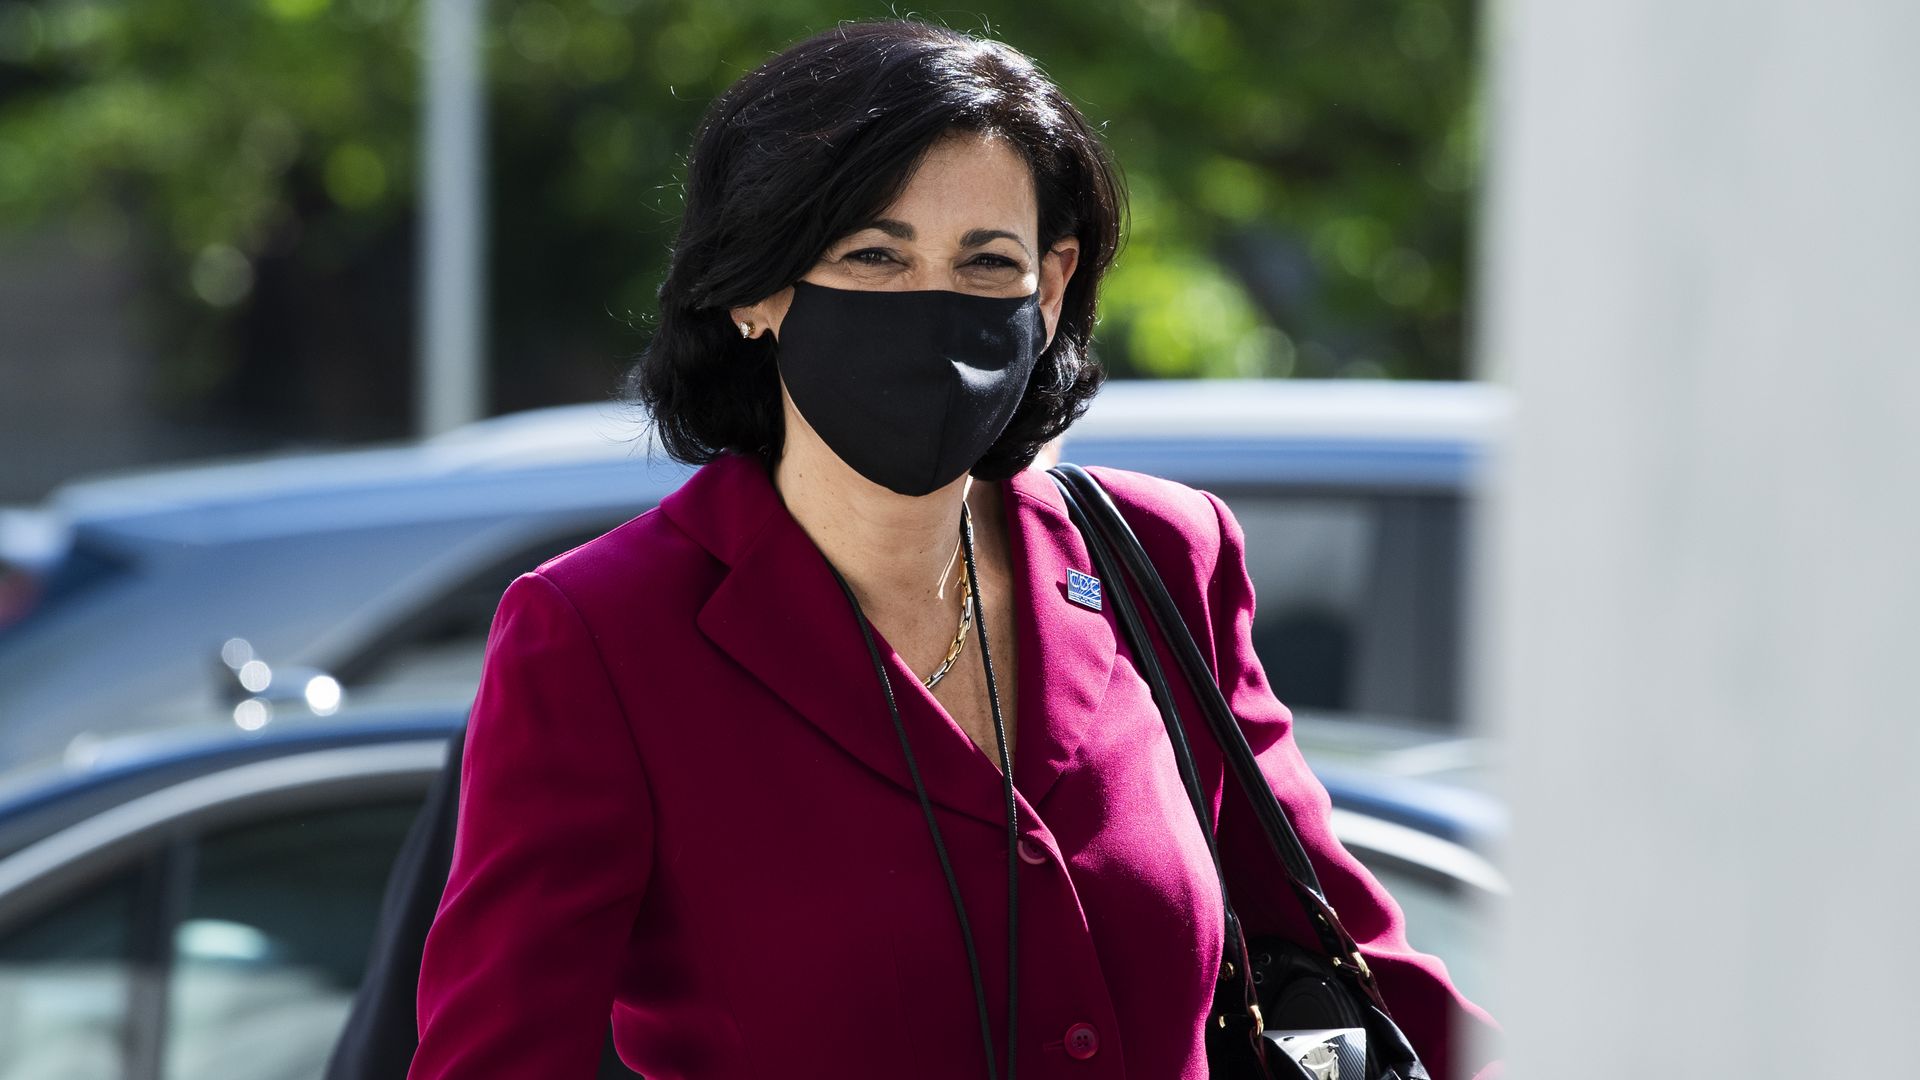 Rochelle Walensky walks outside wearing a black mask on her face.